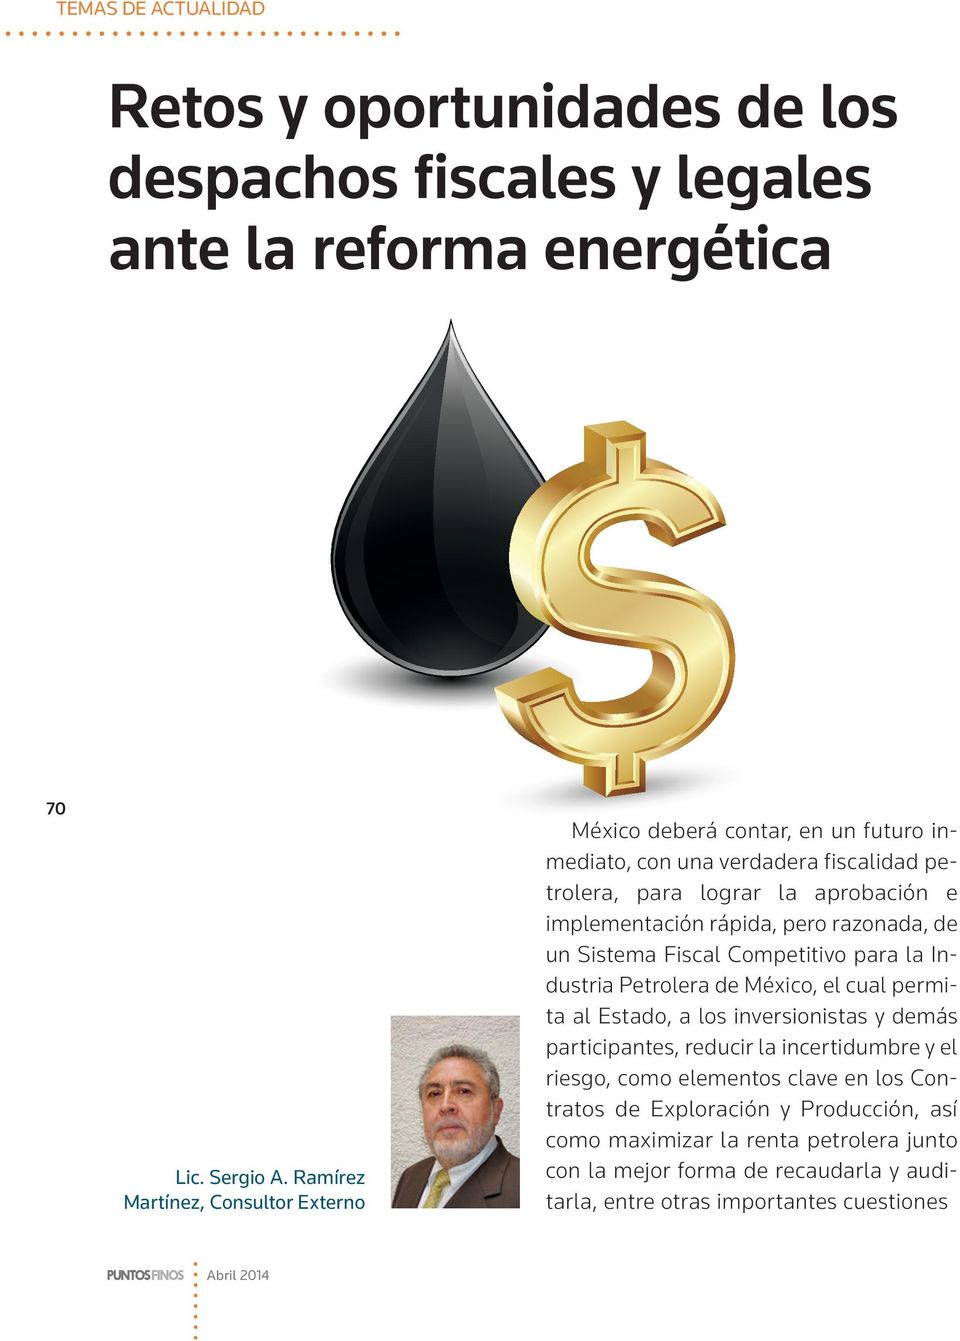 rápida, pero razonada, de un Sistema Fiscal Competitivo para la Industria Petrolera de México, el cual permita al Estado, a los inversionistas y demás participantes,